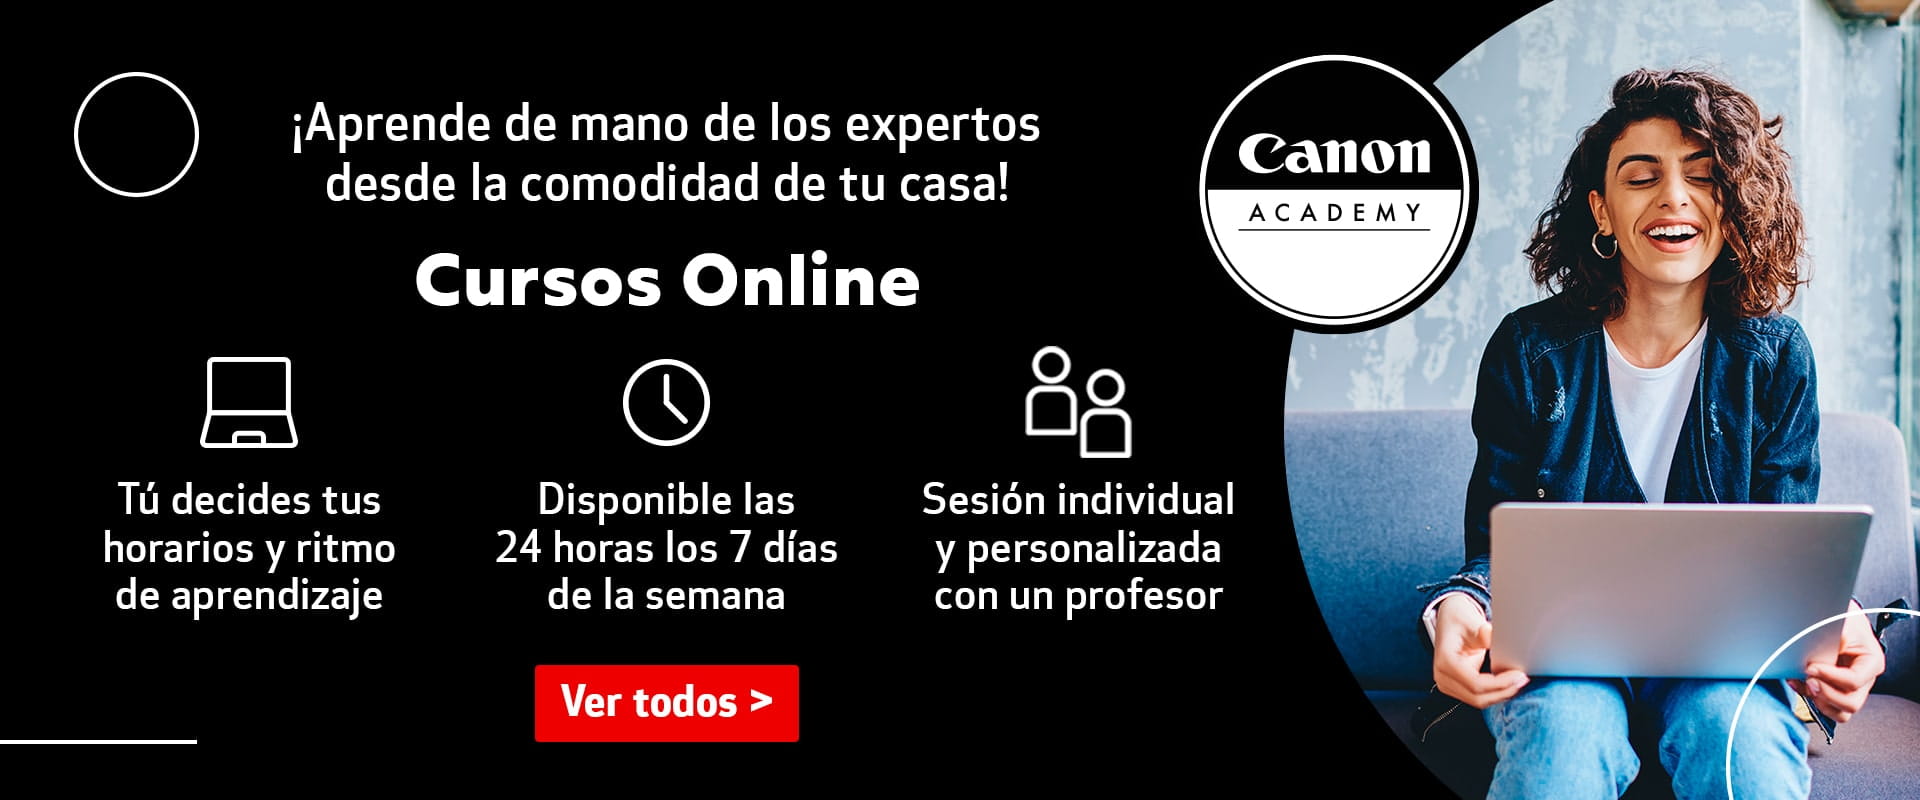 Canon Academy - Cursos Online